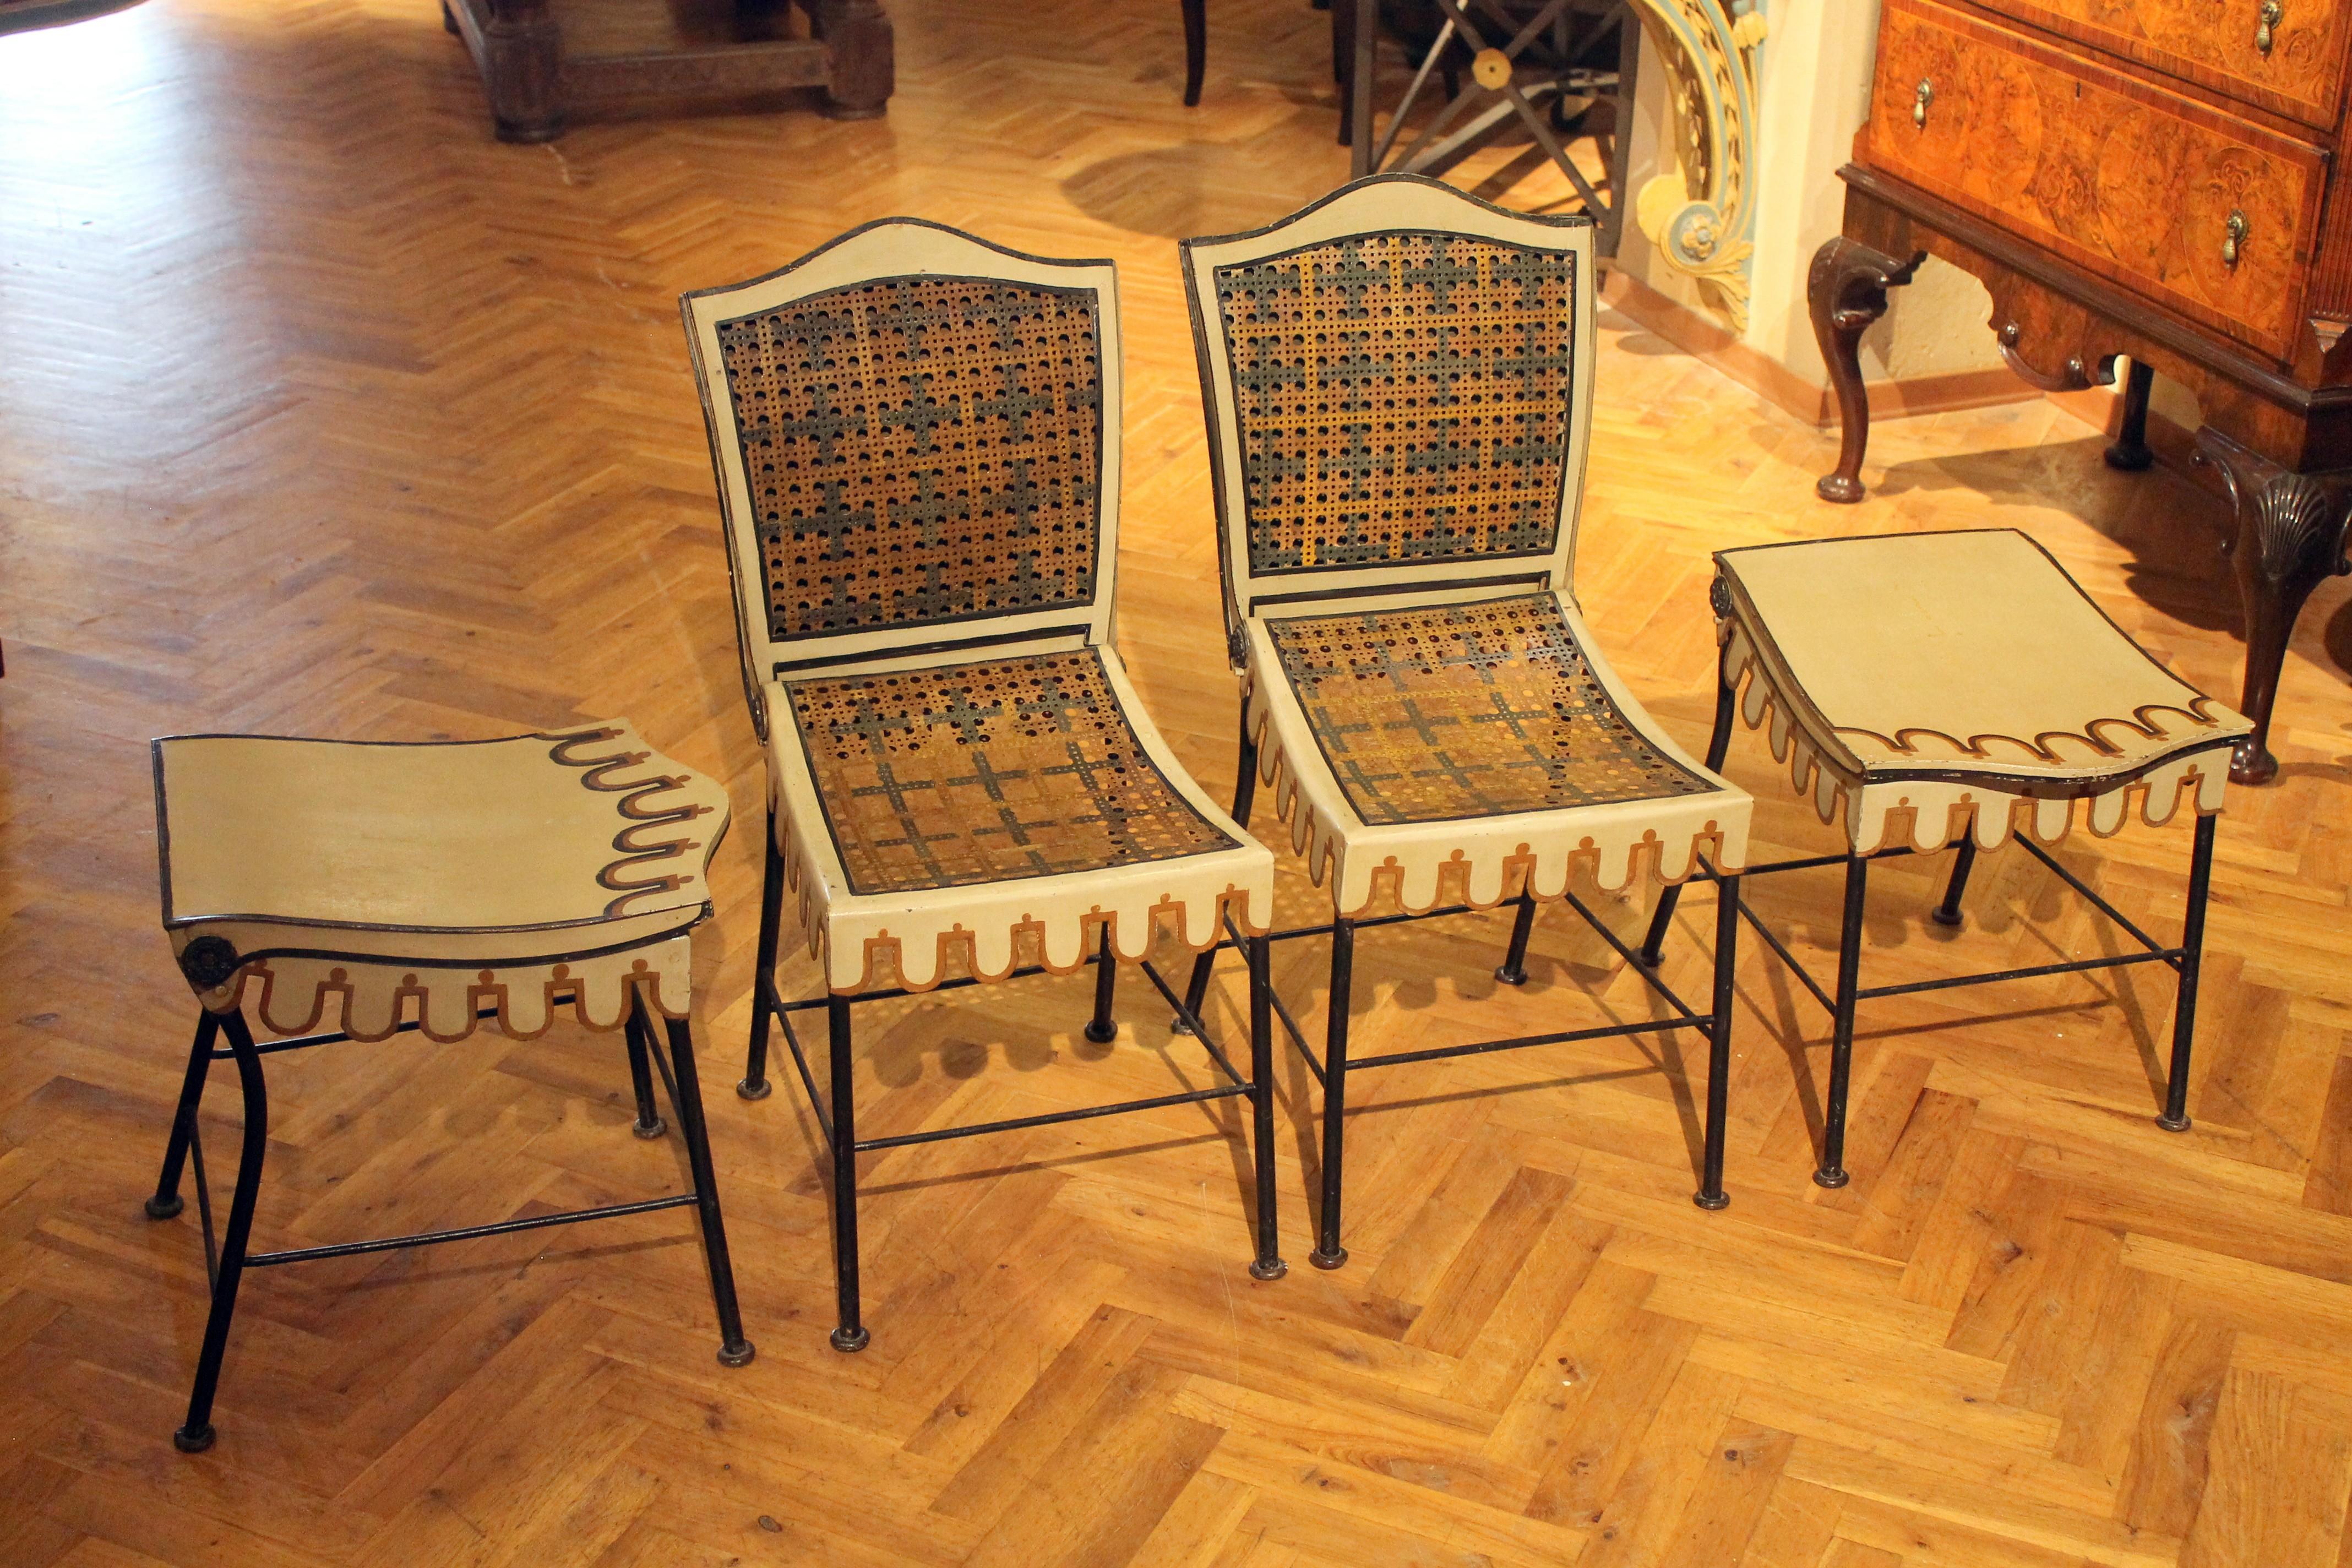 Ce rare ensemble de chaises ou tabourets de jardin pliables en fer, de conception italienne et fabriqués à la main, est très festif et charmant grâce à son design festonné et sa construction ingénieuse
Entièrement fabriquées en fer, ces chaises qui